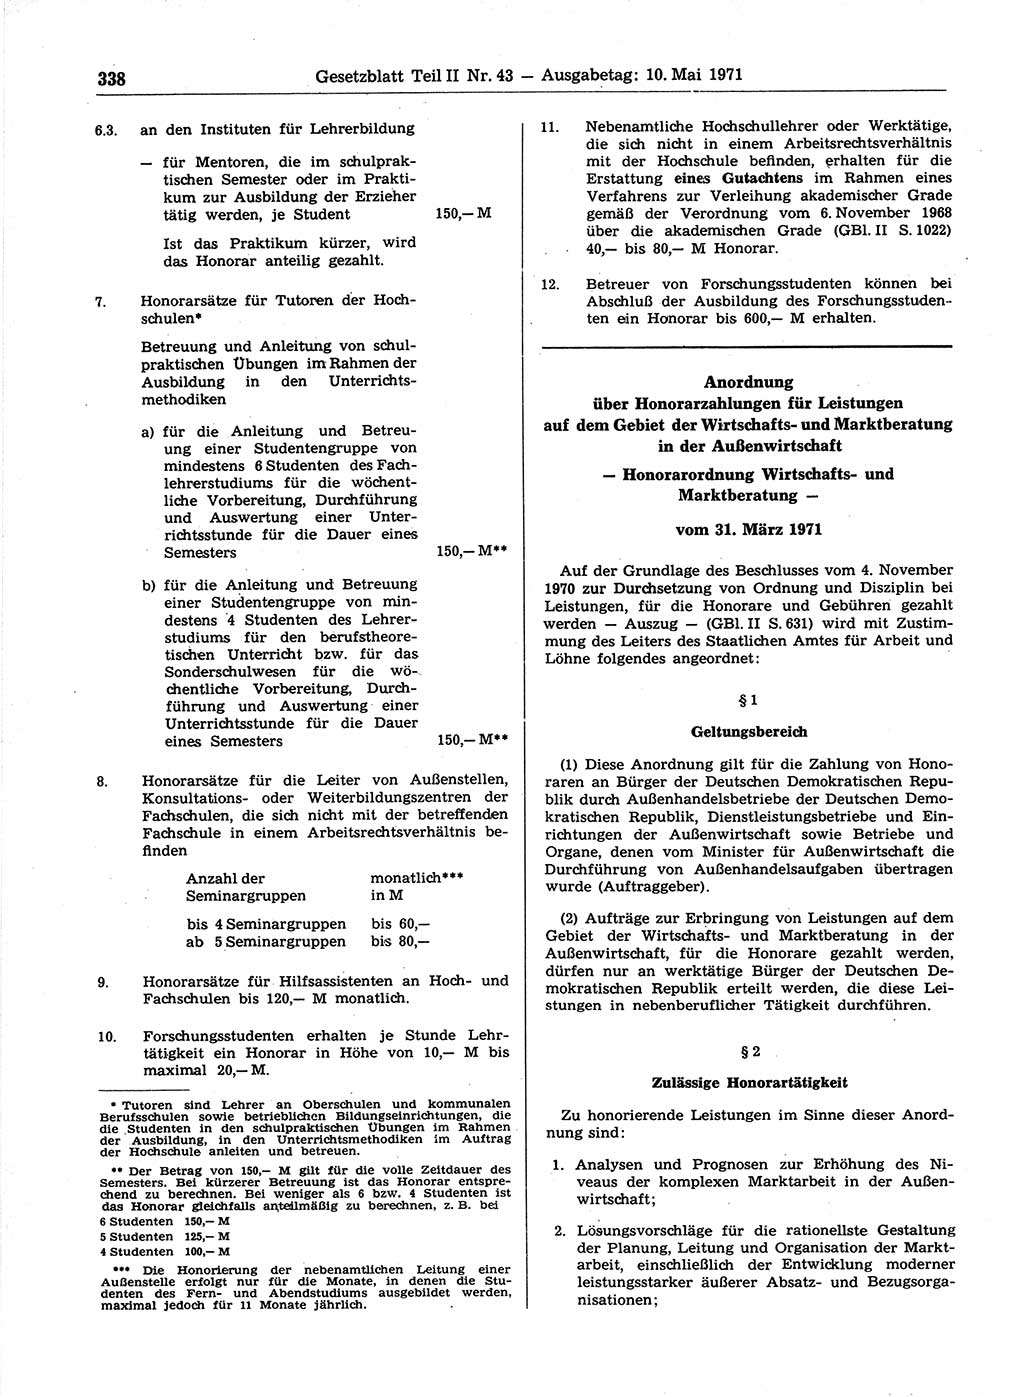 Gesetzblatt (GBl.) der Deutschen Demokratischen Republik (DDR) Teil ⅠⅠ 1971, Seite 338 (GBl. DDR ⅠⅠ 1971, S. 338)